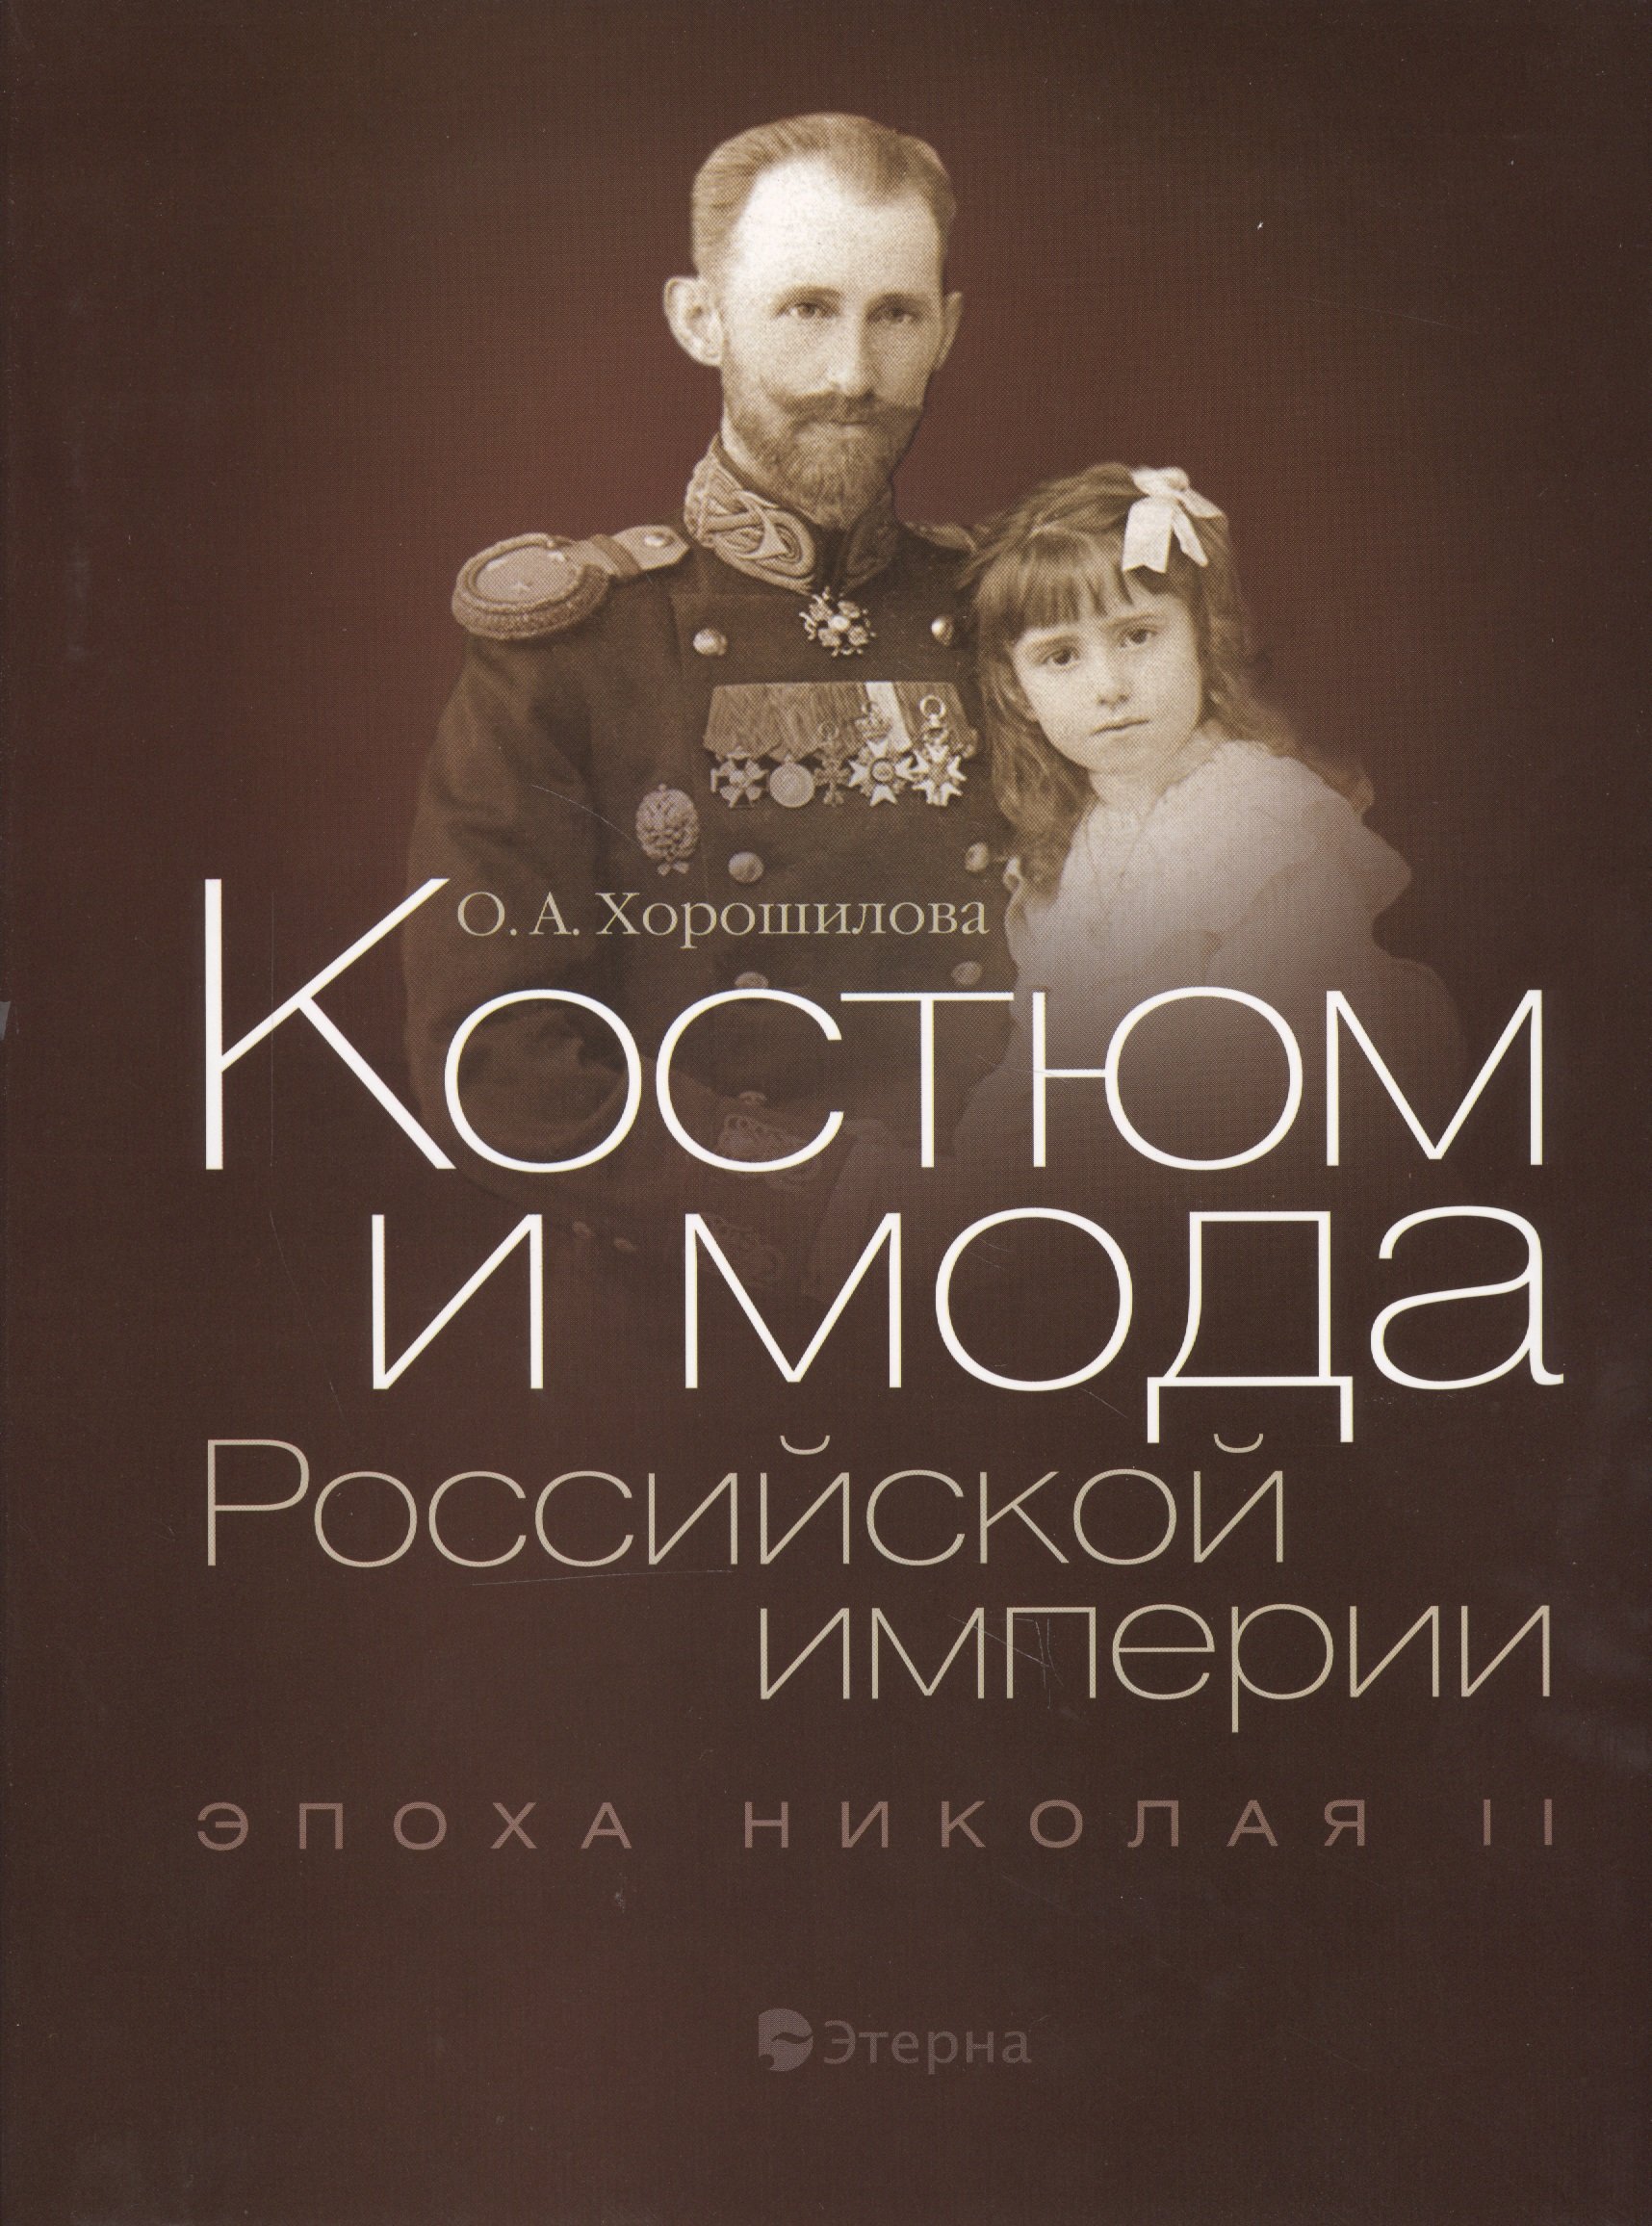 

Костюм и мода Российской империи. Эпоха Николая II